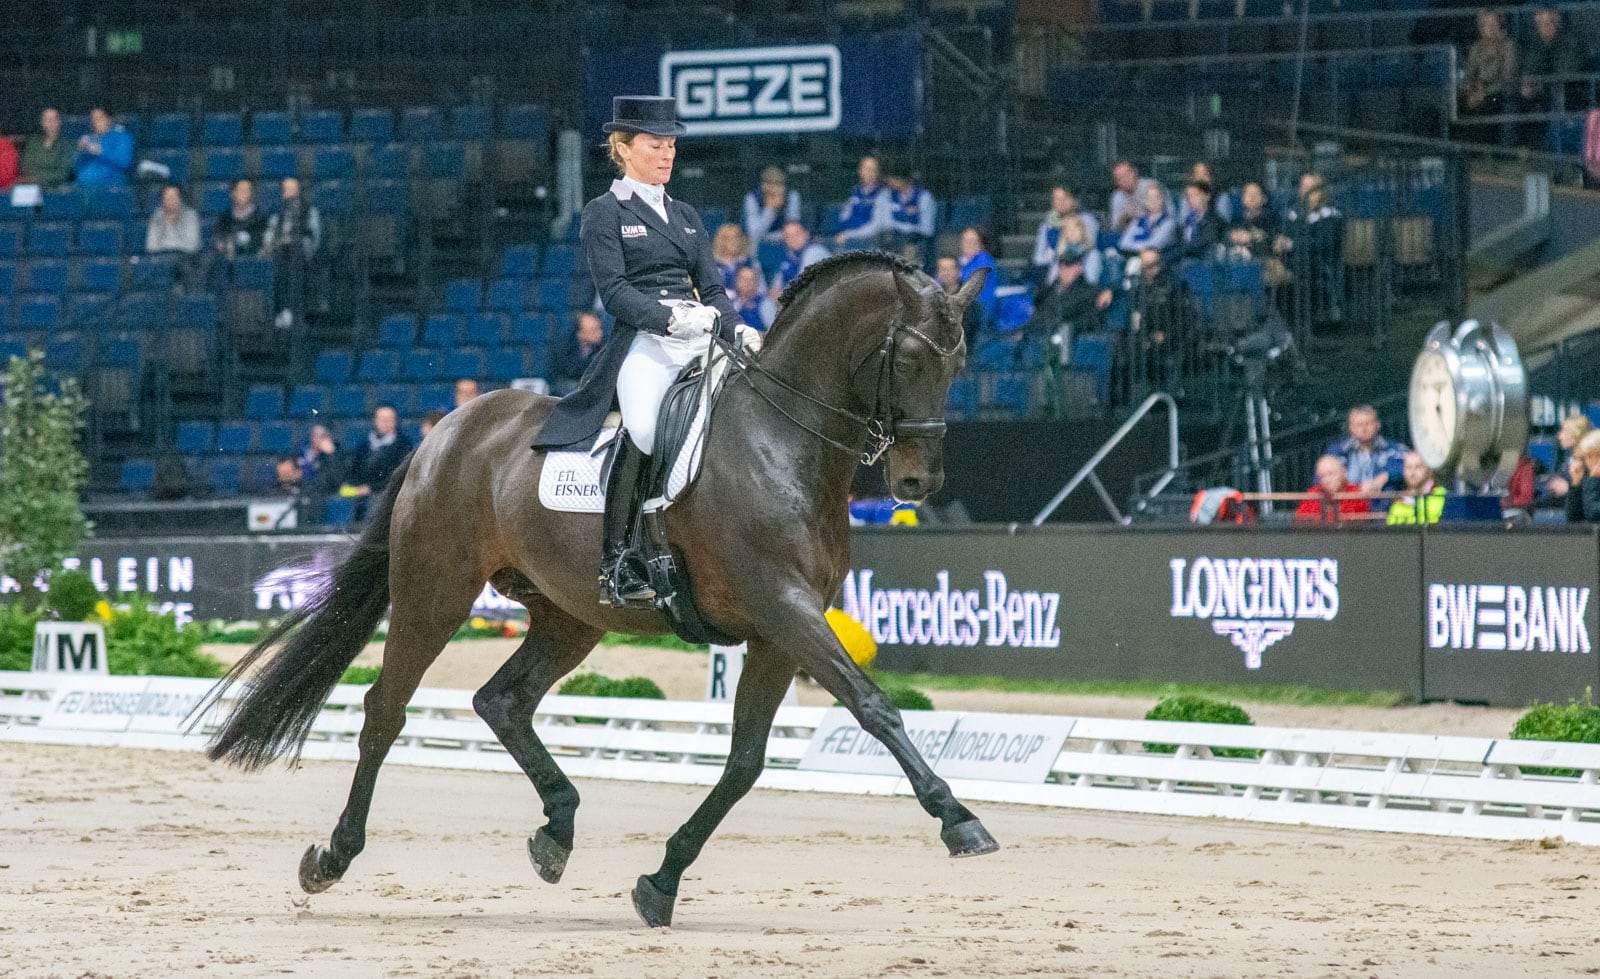 Internationales Festhallen Reitturnier Frankfurt – Schafhof Edition: Helen Langehanenberg und Straight Horse Ascenzione in der Einlaufprüfung auf Platz 1